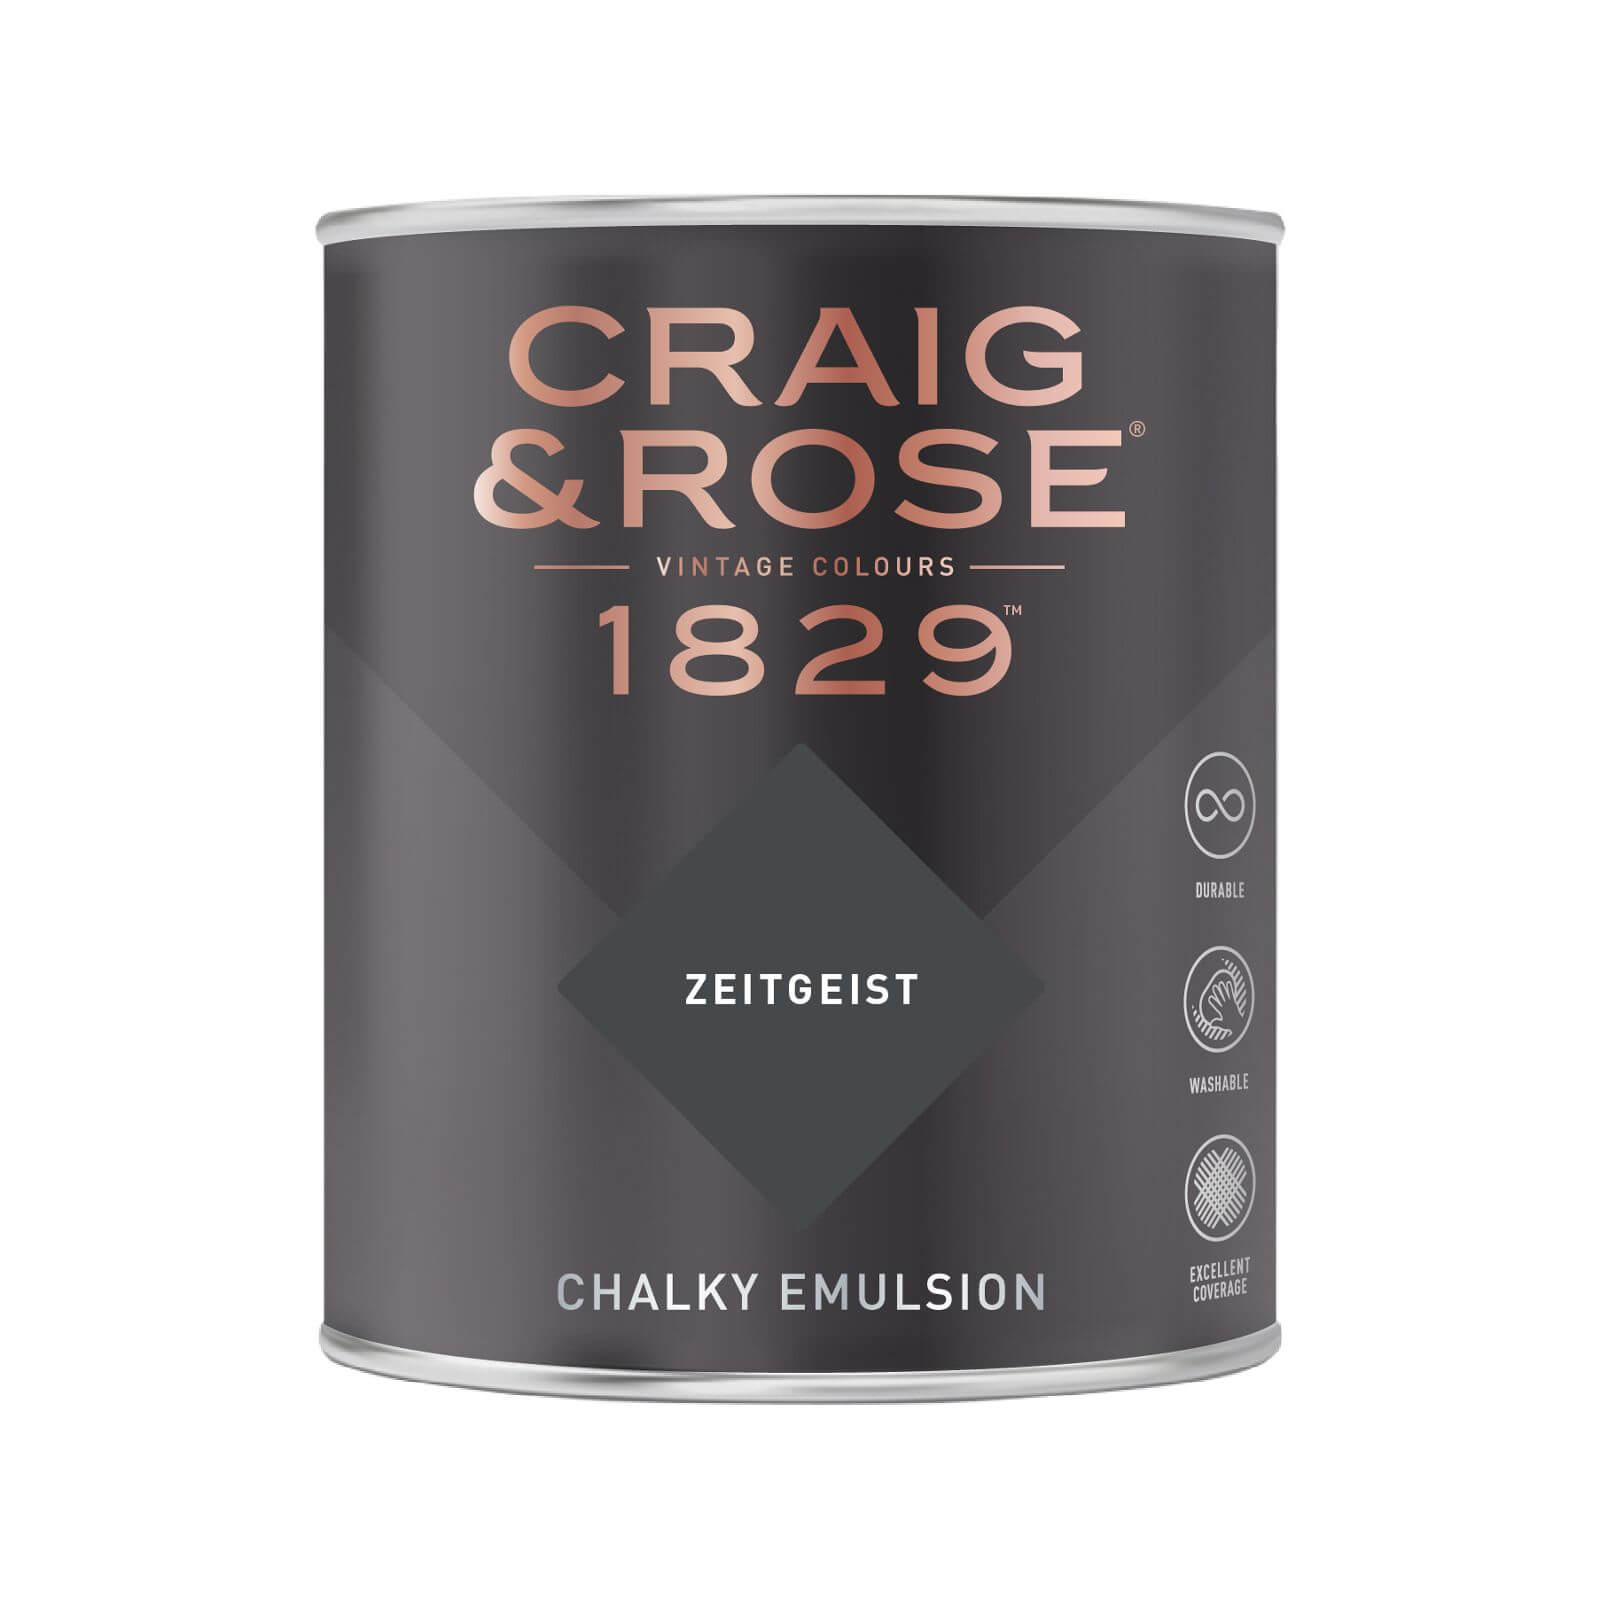 Craig & Rose 1829 Chalky Emulsion Paint Zeitgeist - 750ml